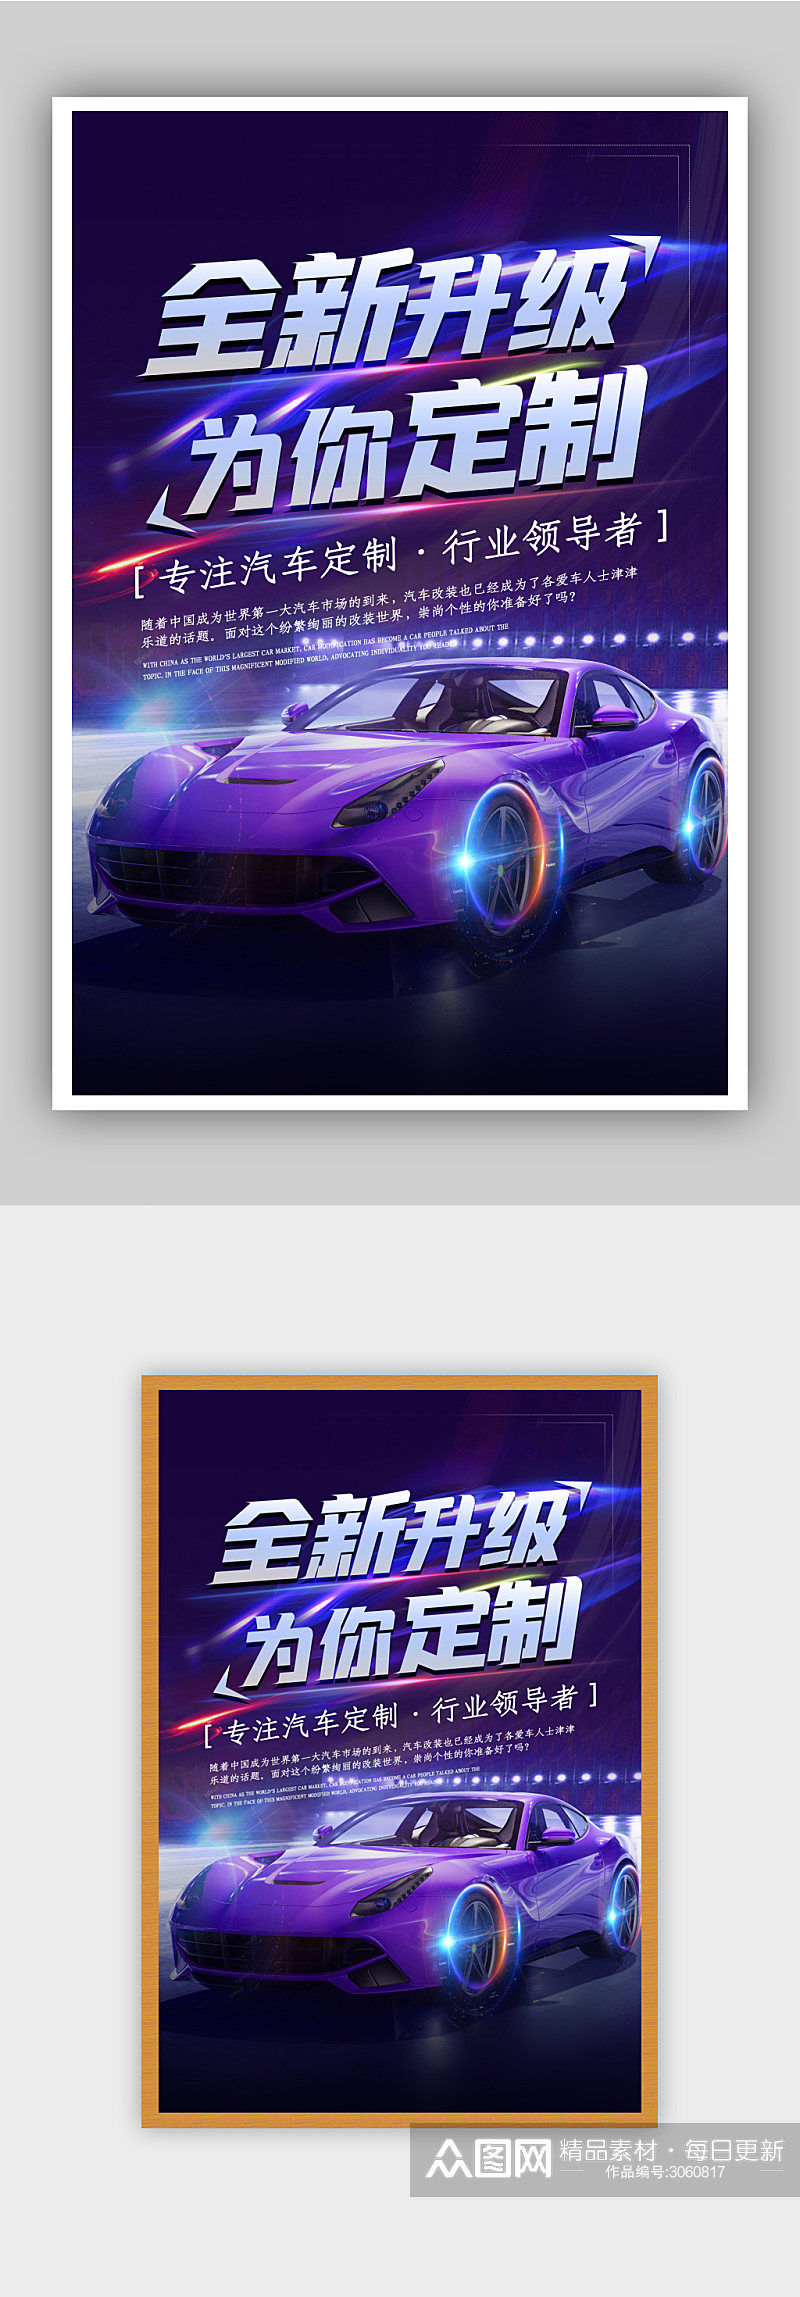 紫色汽车海报设计素材